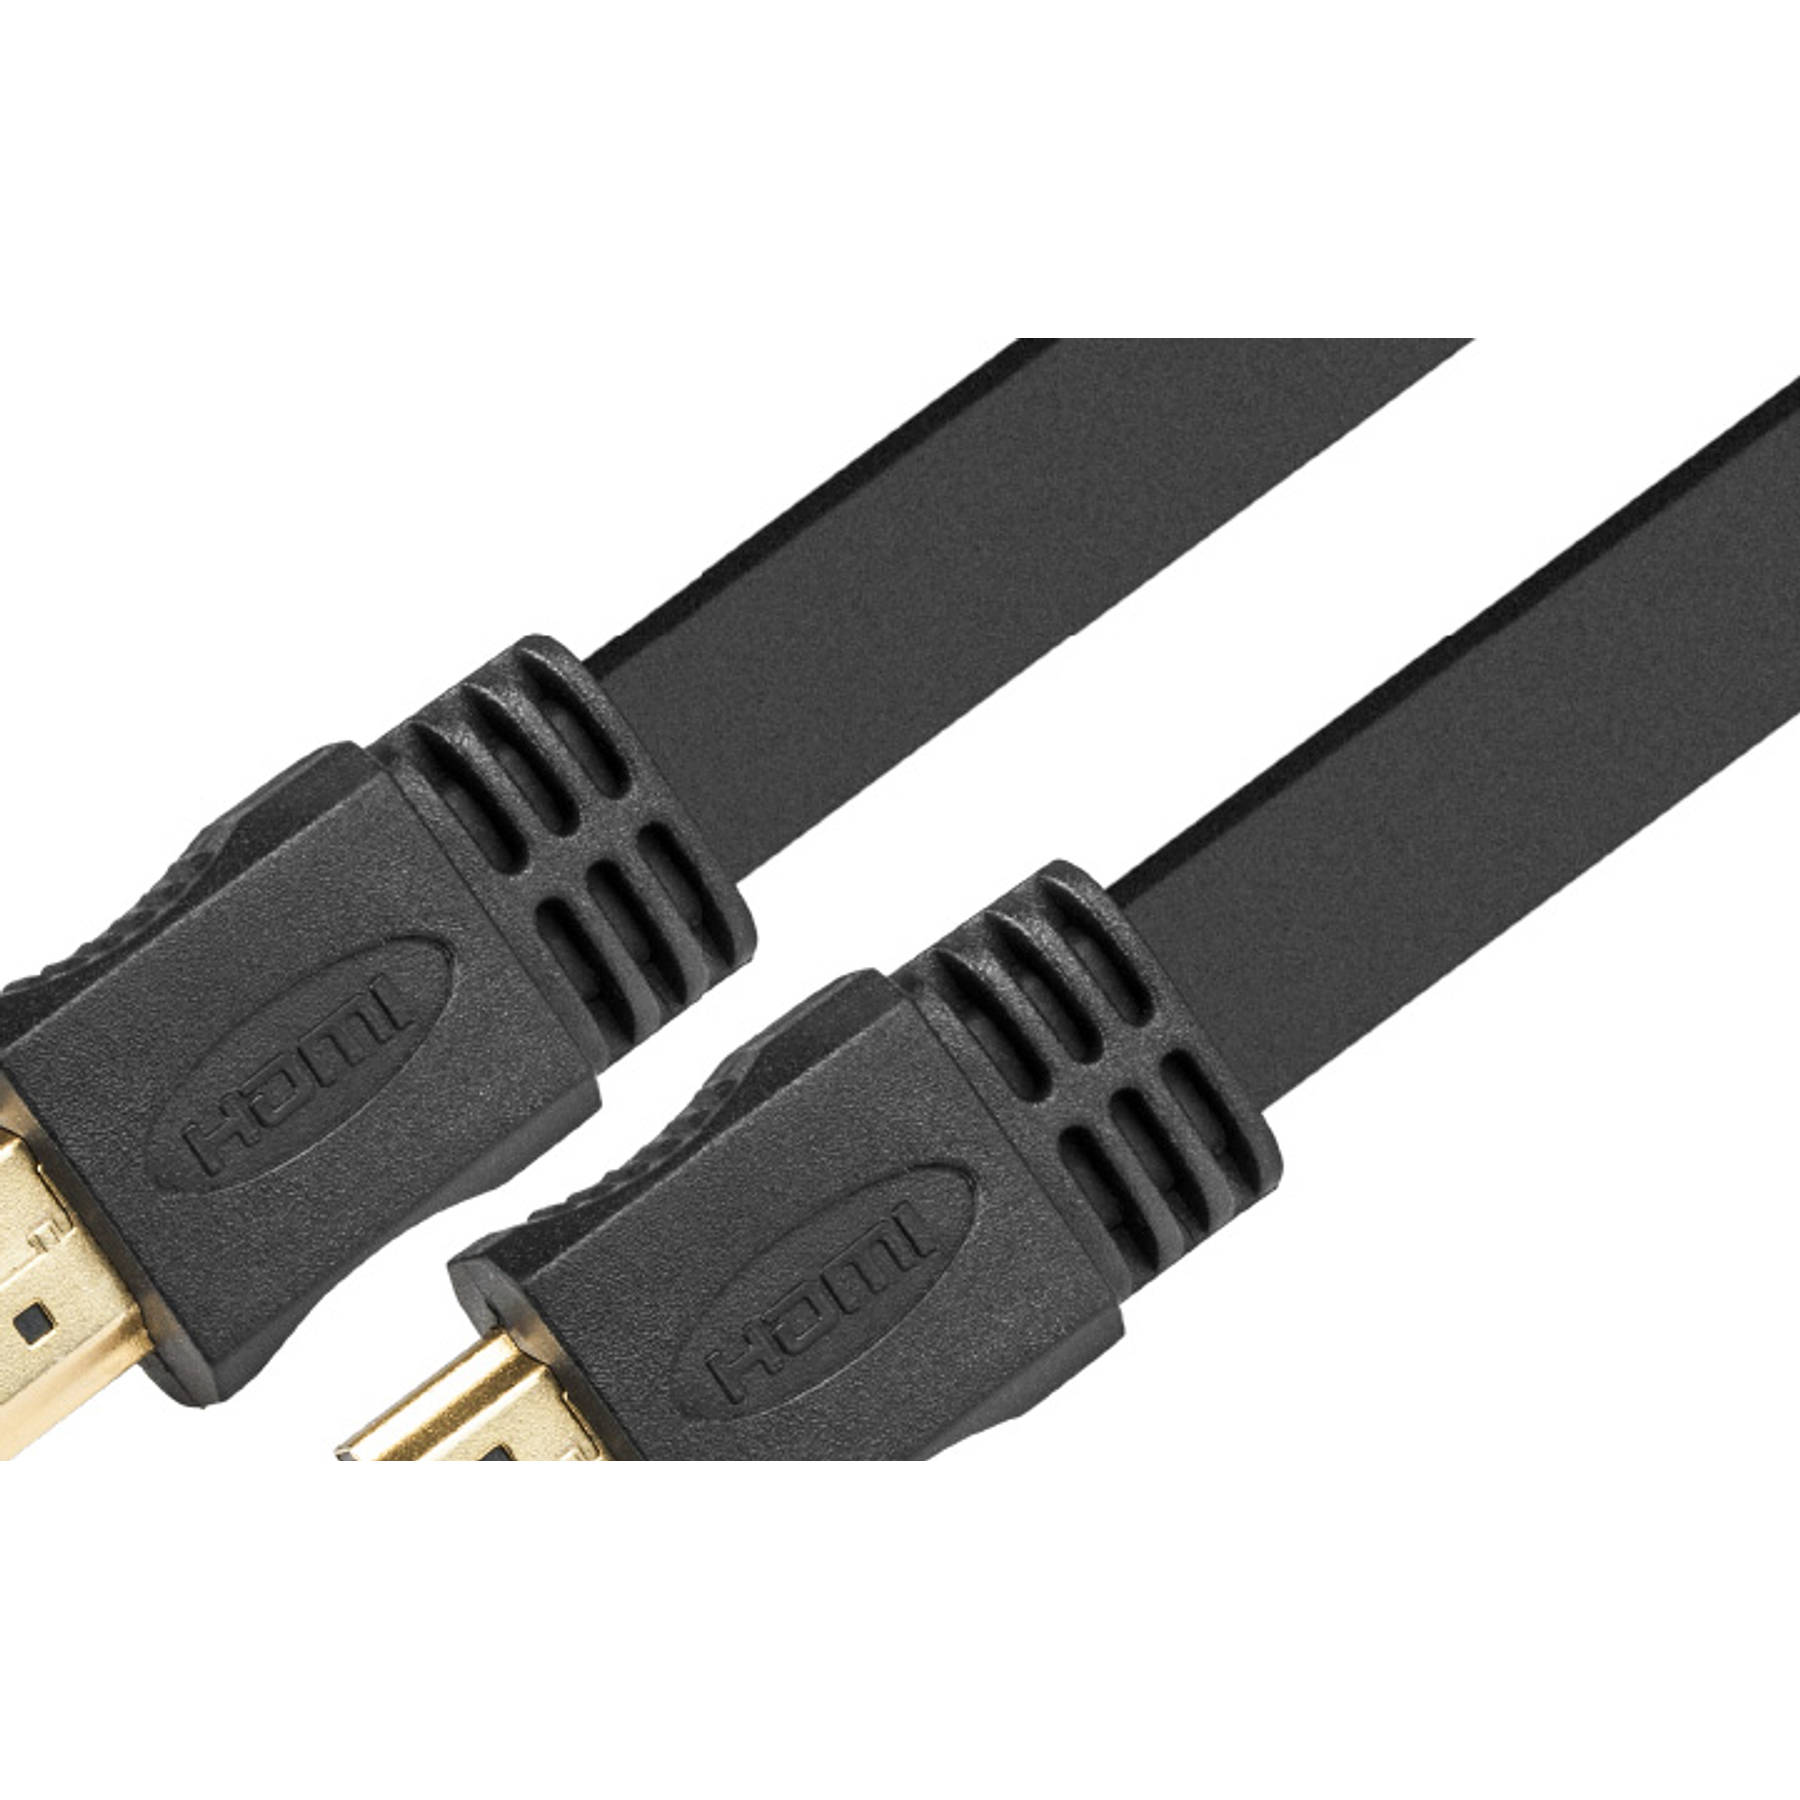  Xtech Cable HDMI Plano Con Conector Macho a Macho 3 Metros